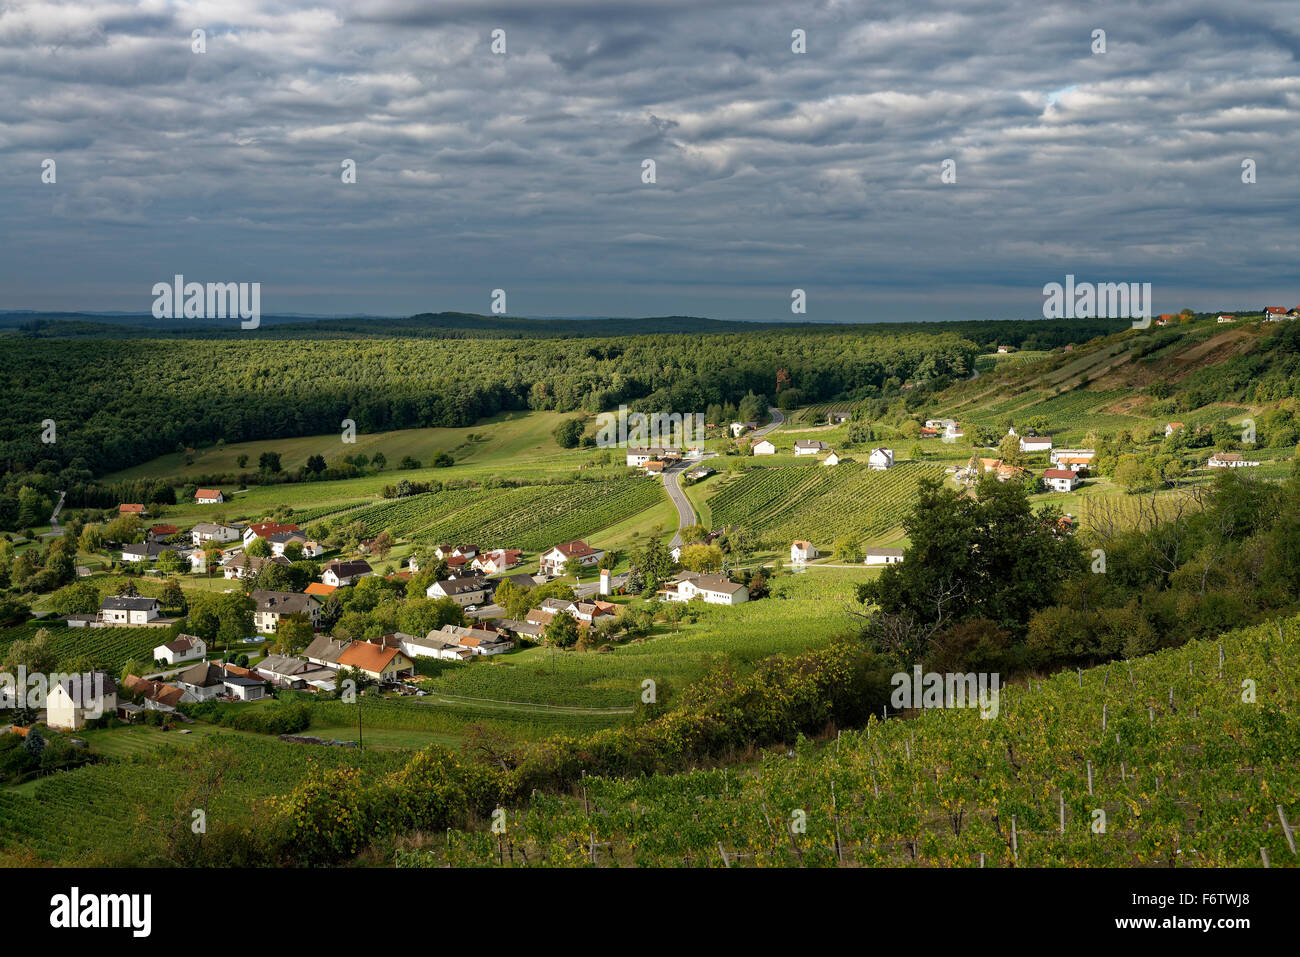 Austria, Burgenland, Eisenberg an der Pinka, view of the village with vineyards Stock Photo